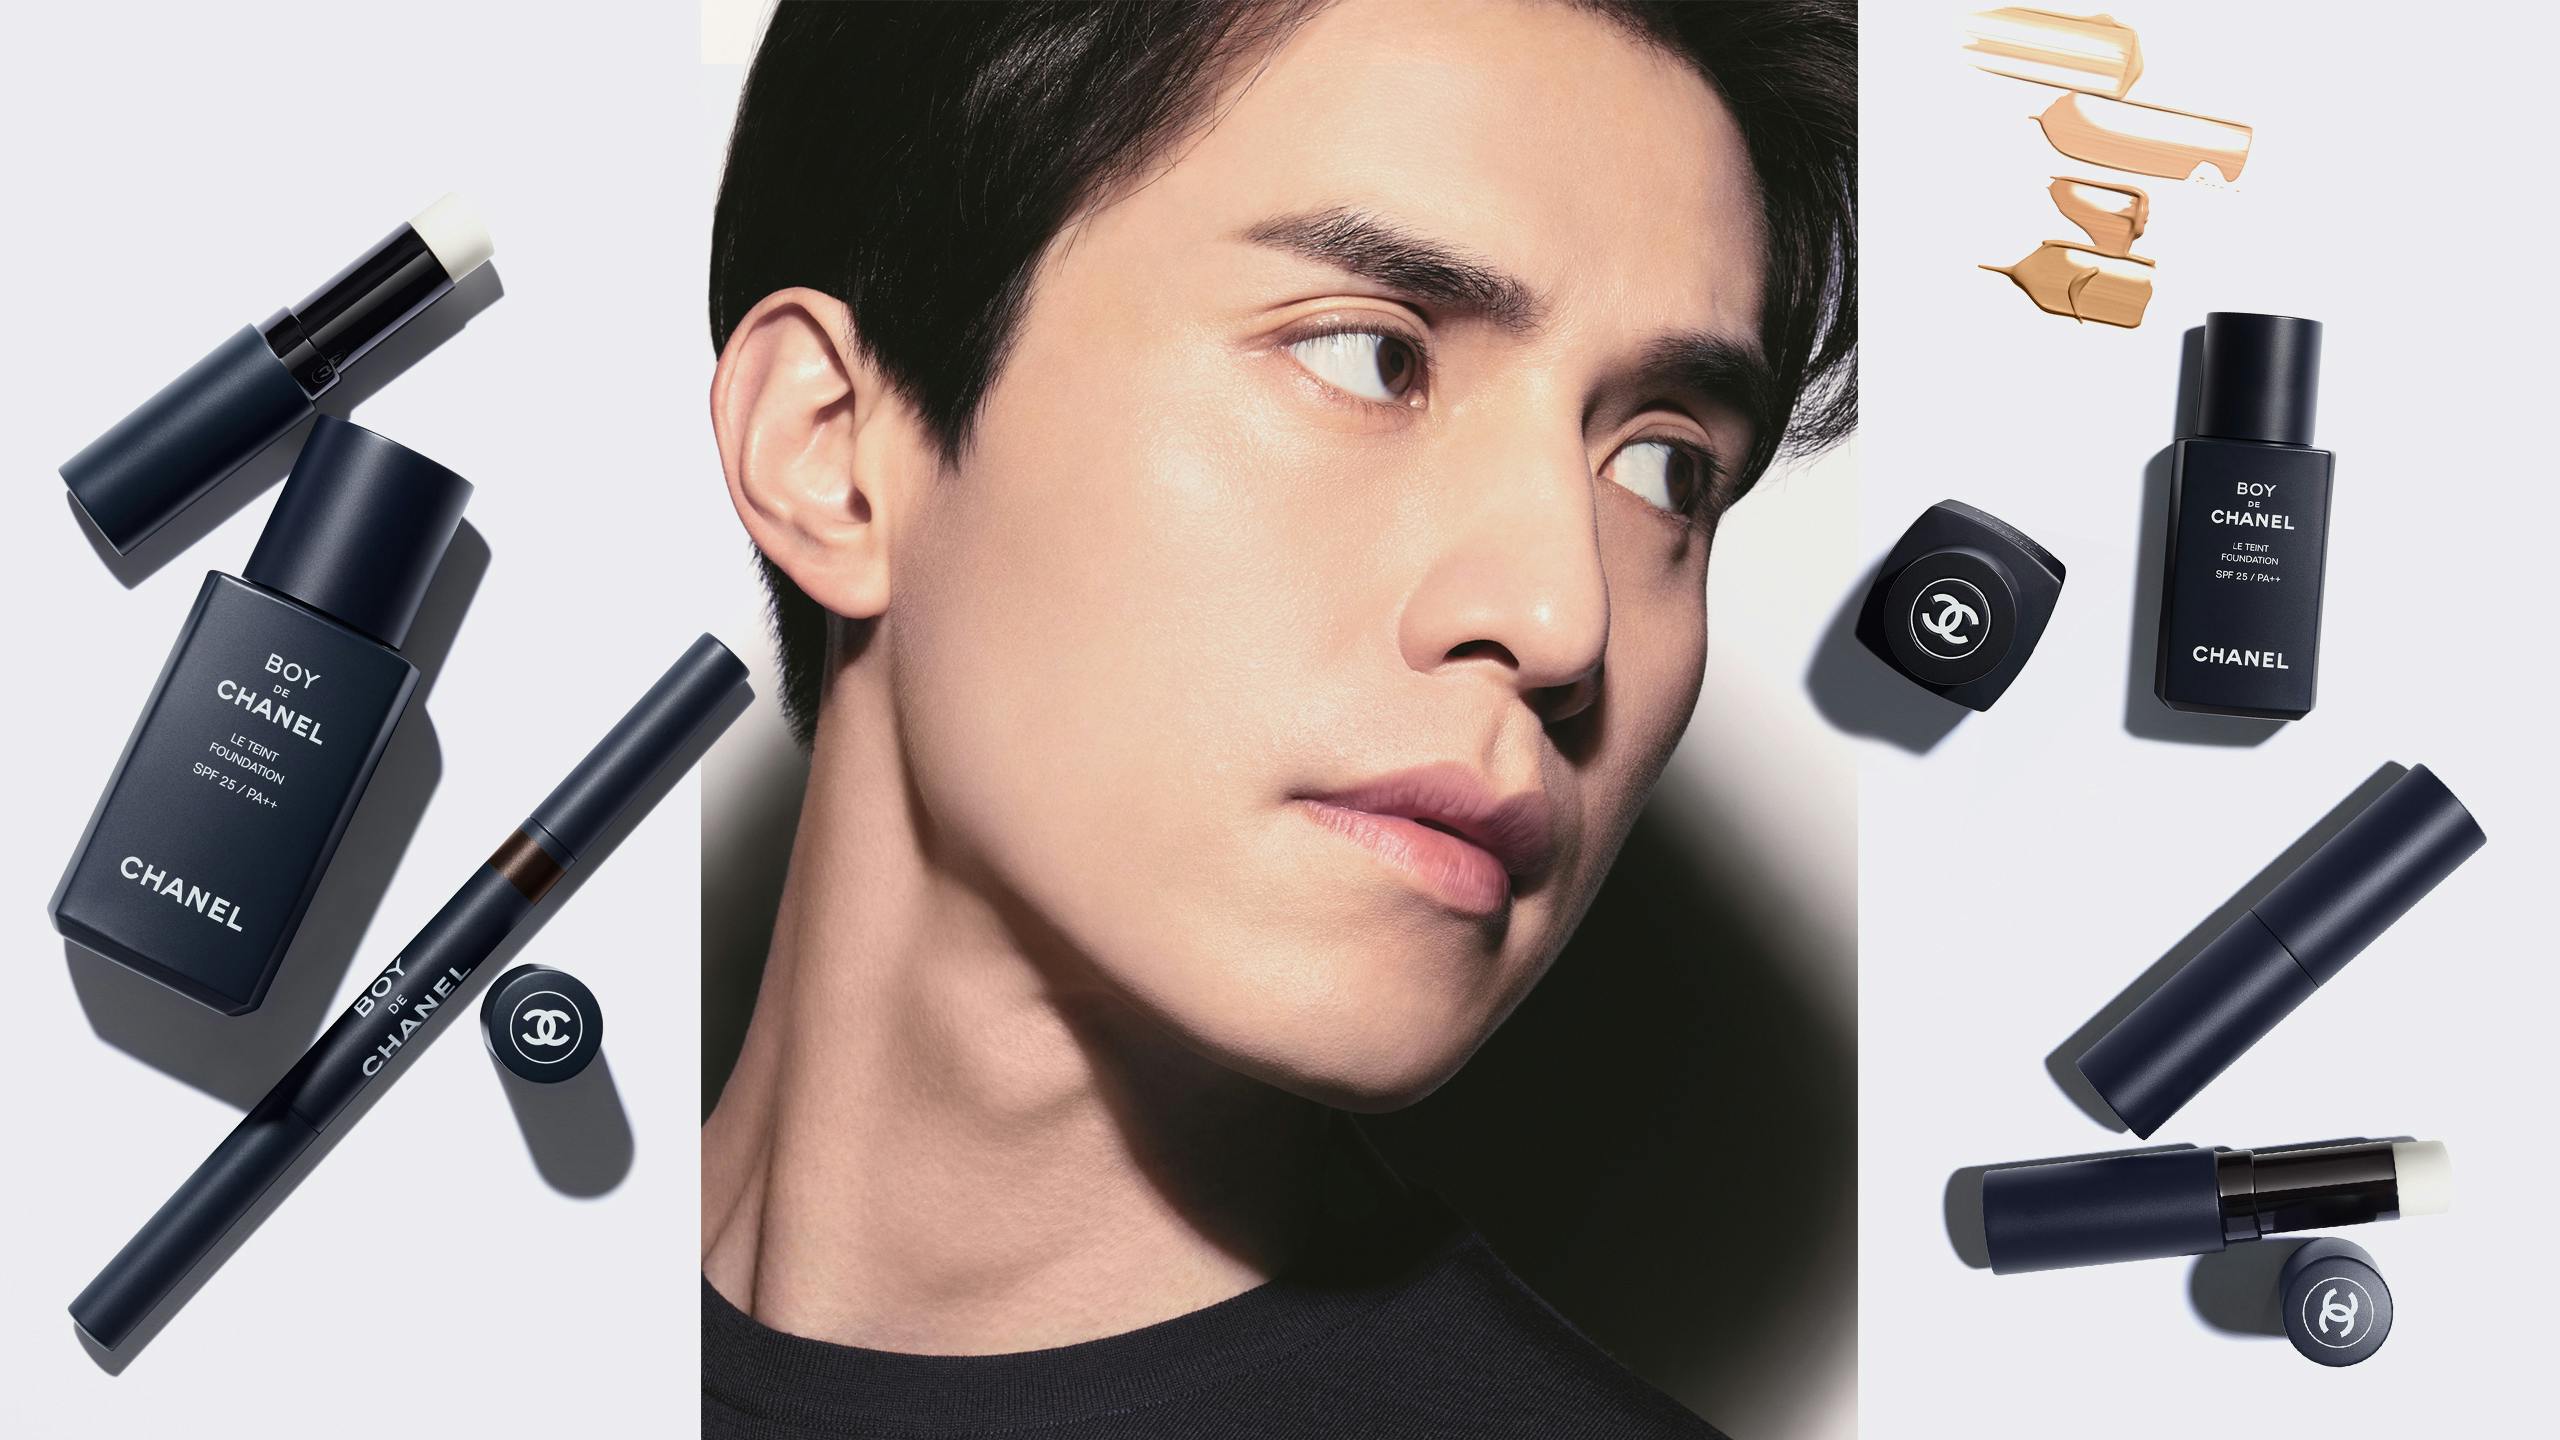 Chanel debuts Boy de Chanel, a makeup line for men